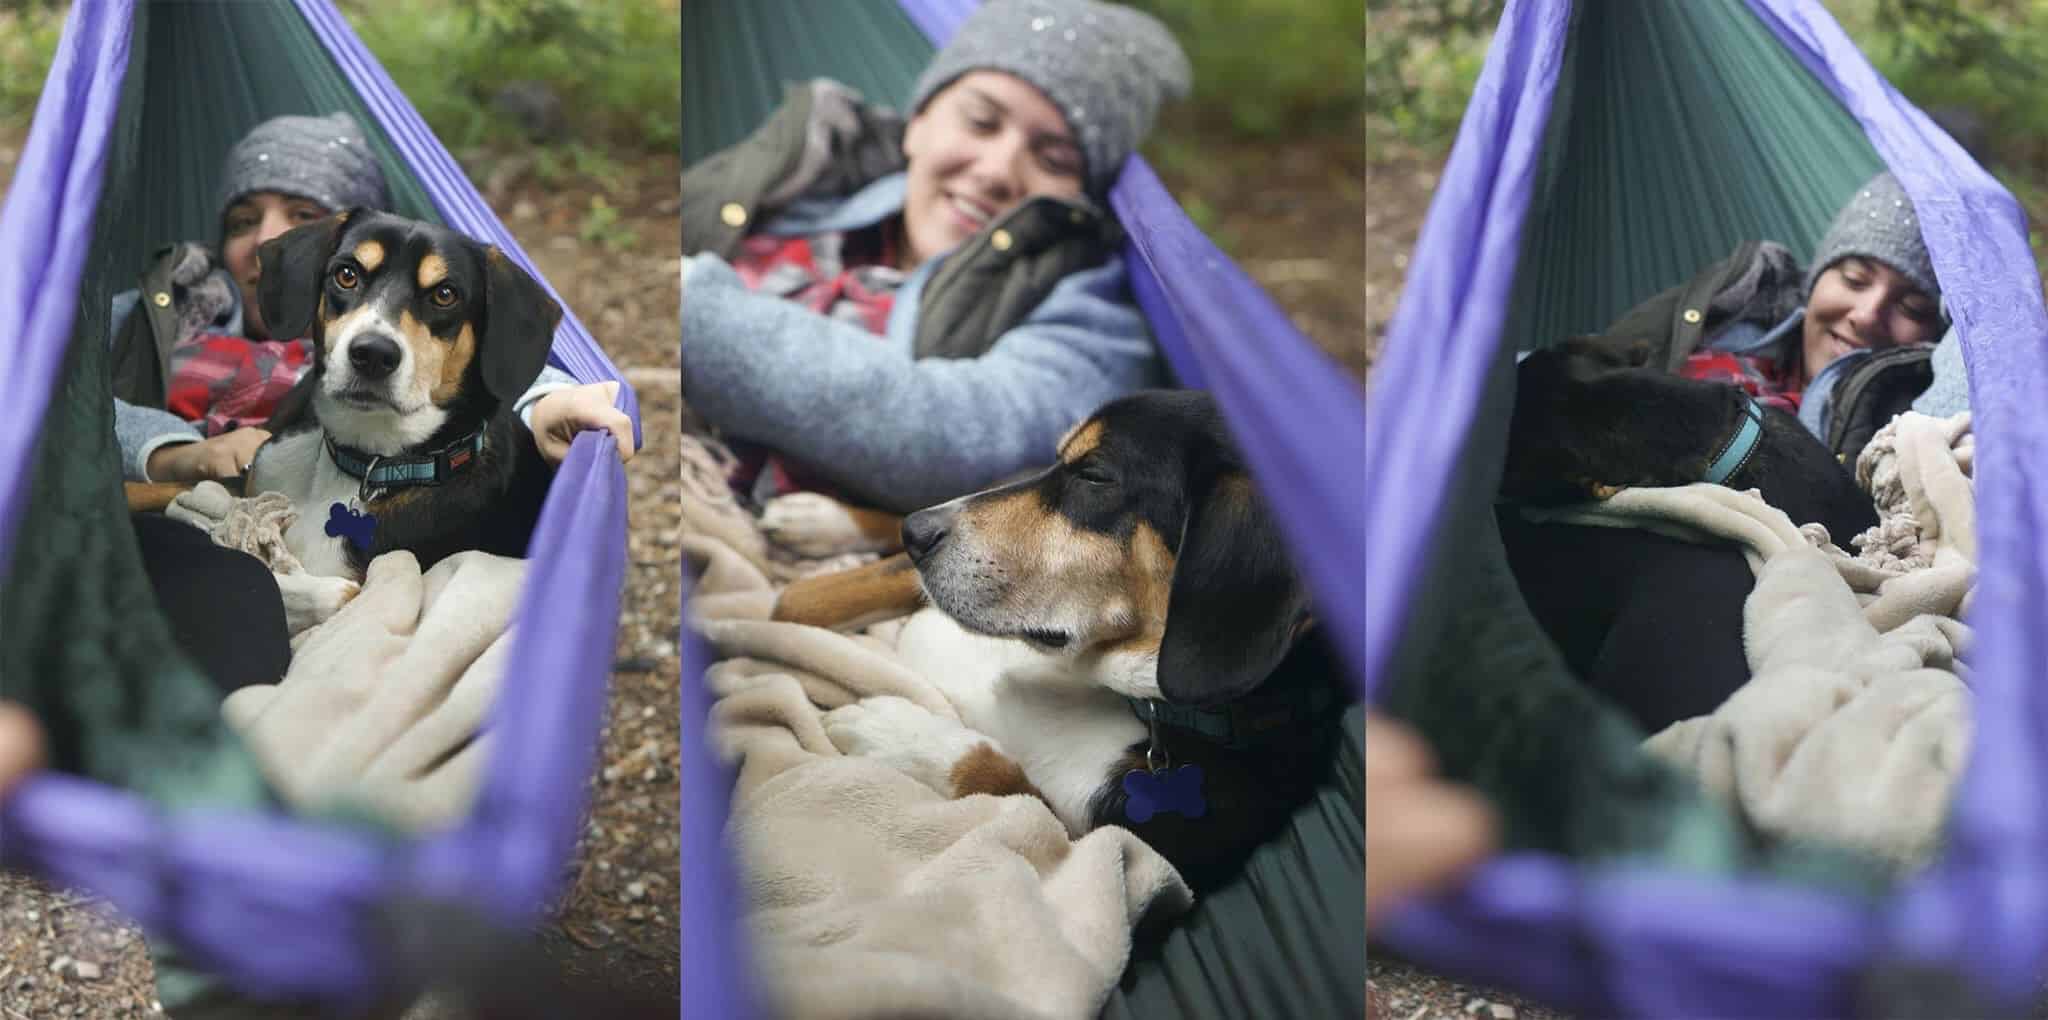 Dog in hammock